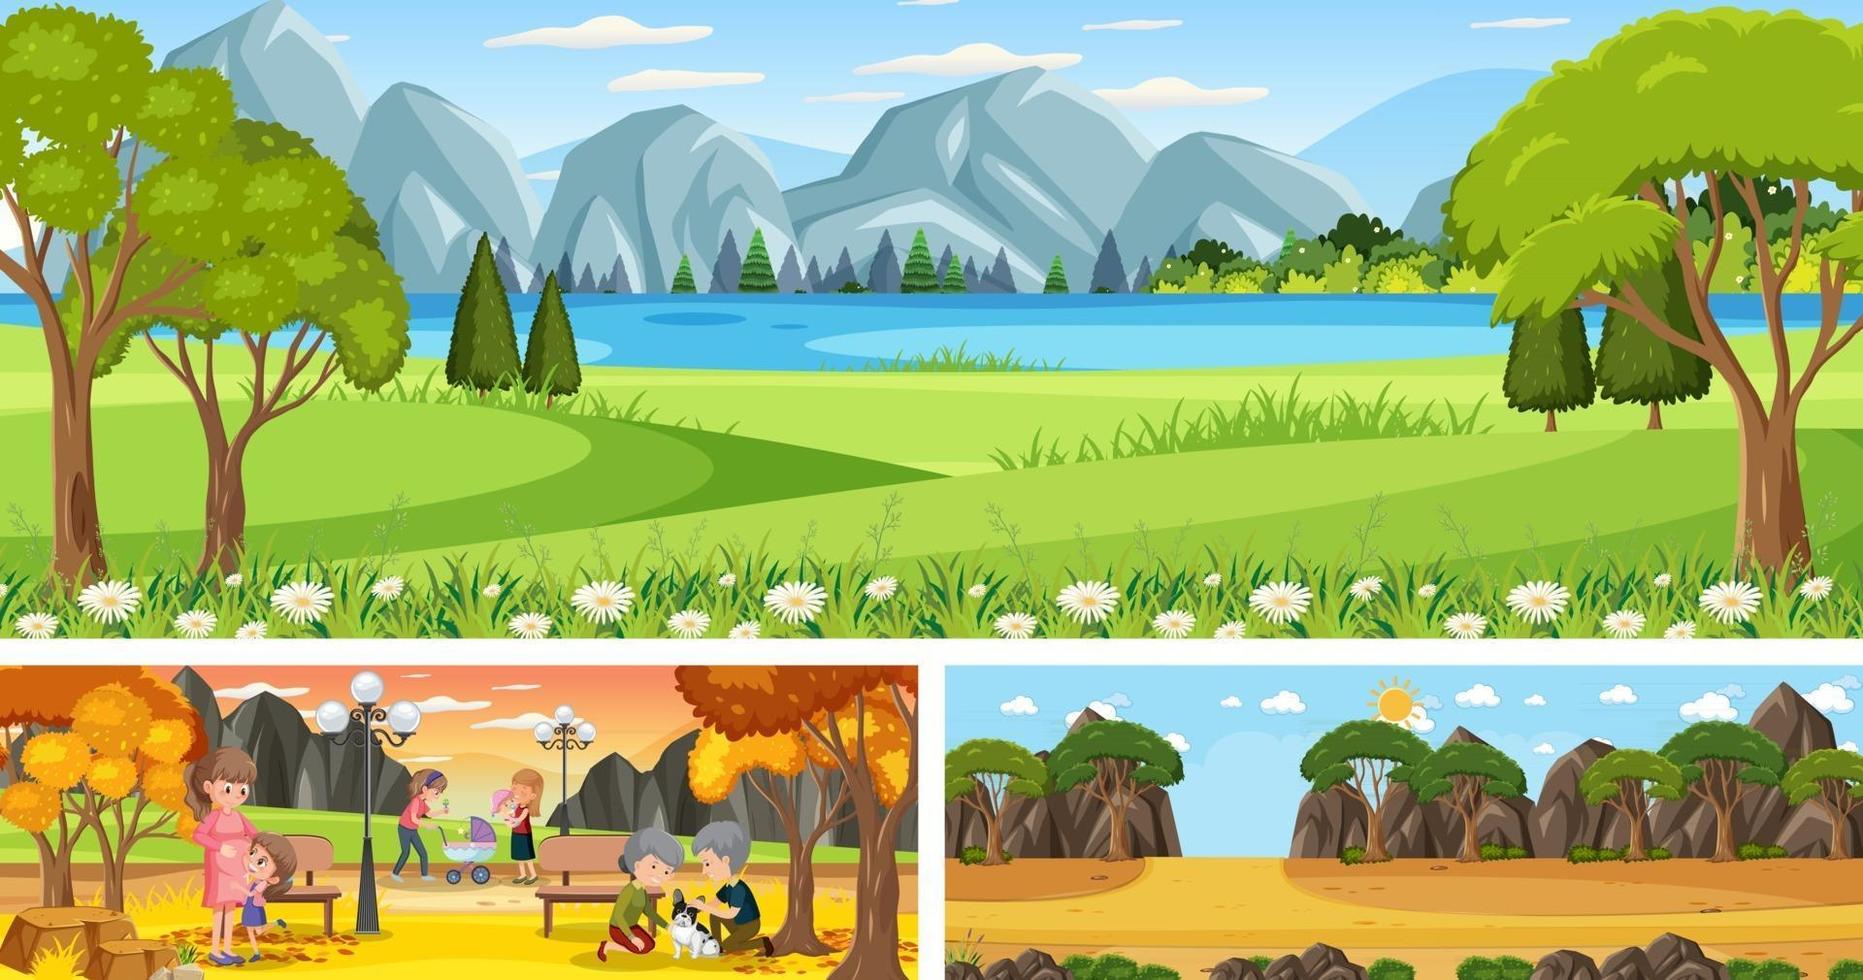 uppsättning av olika utomhus panorama landskap scener med seriefigur vektor